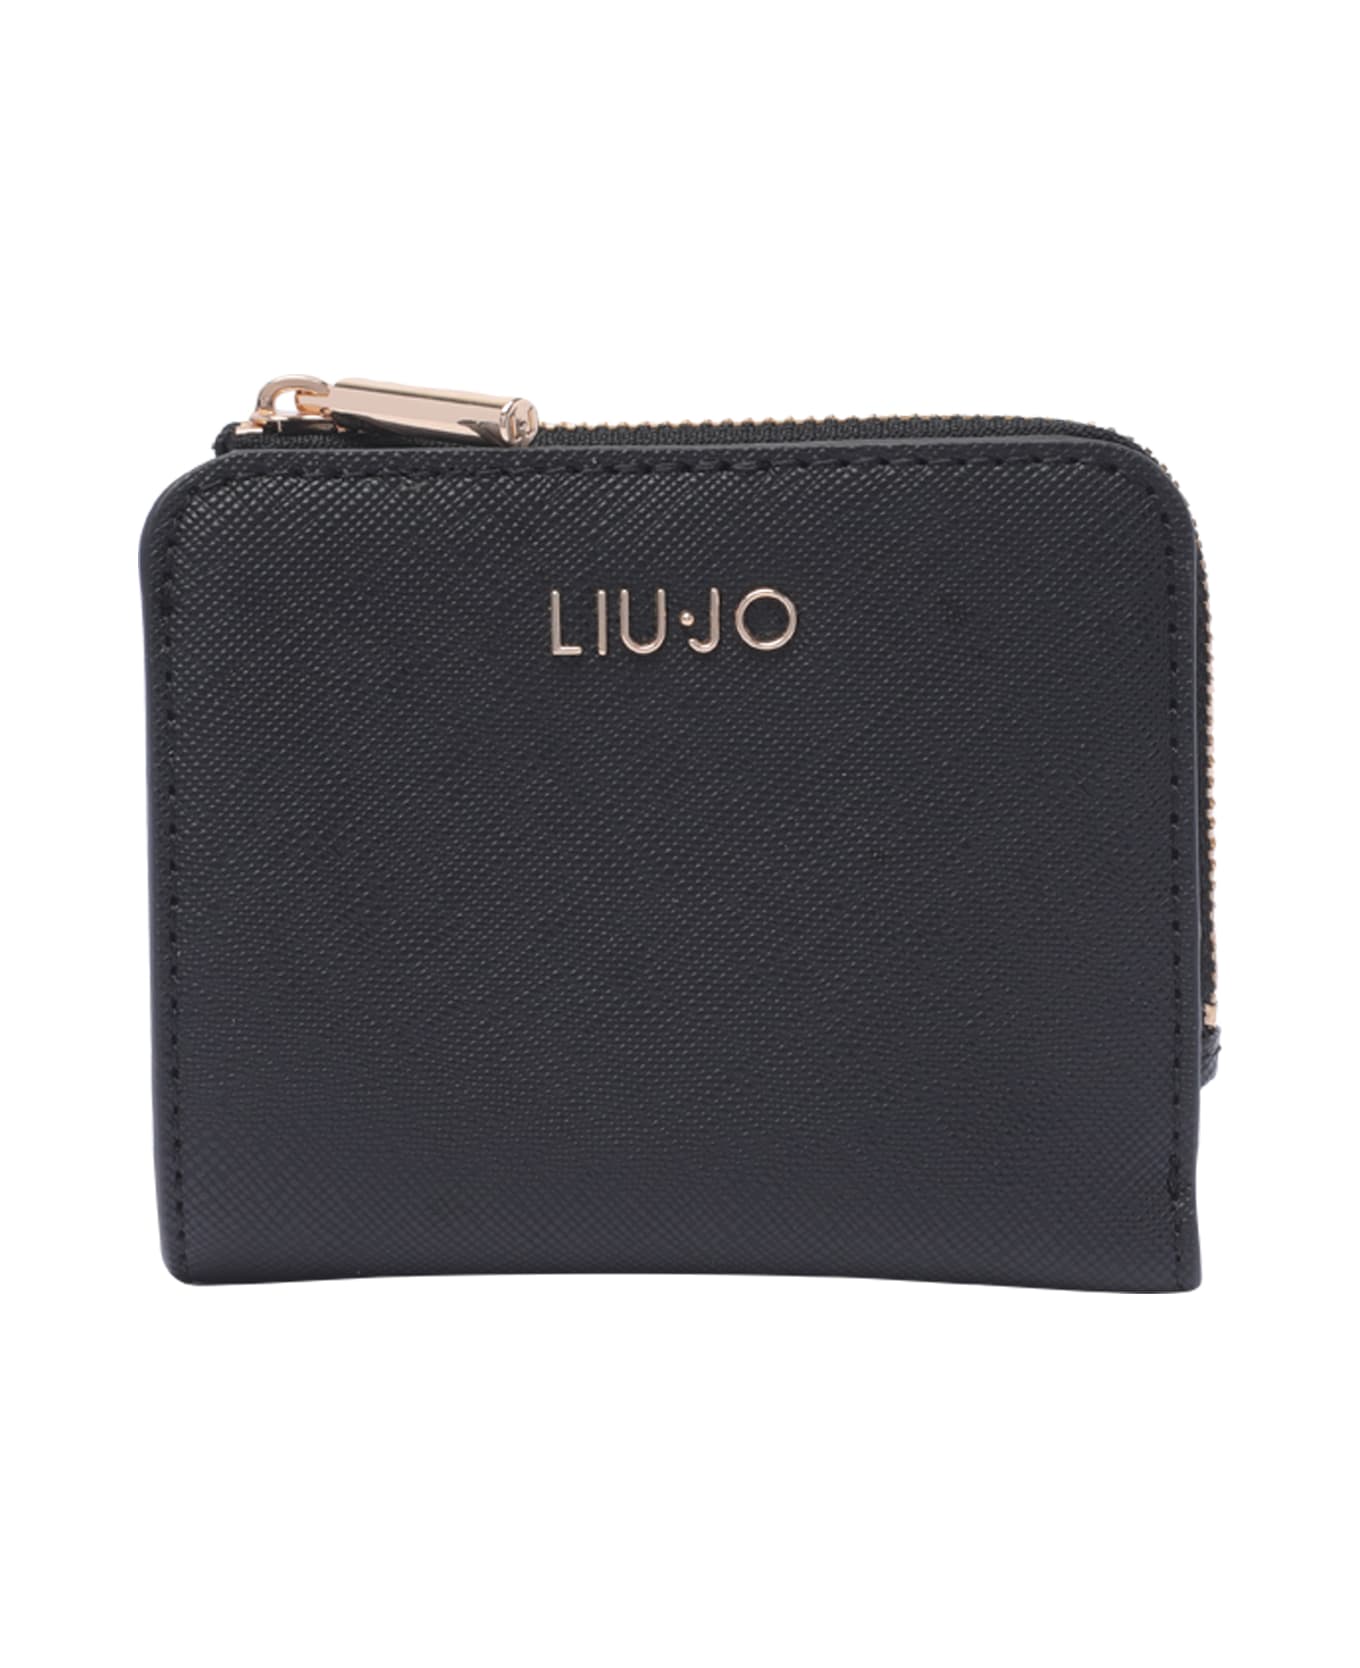 Liu-Jo Logo Credit Card Case - Black